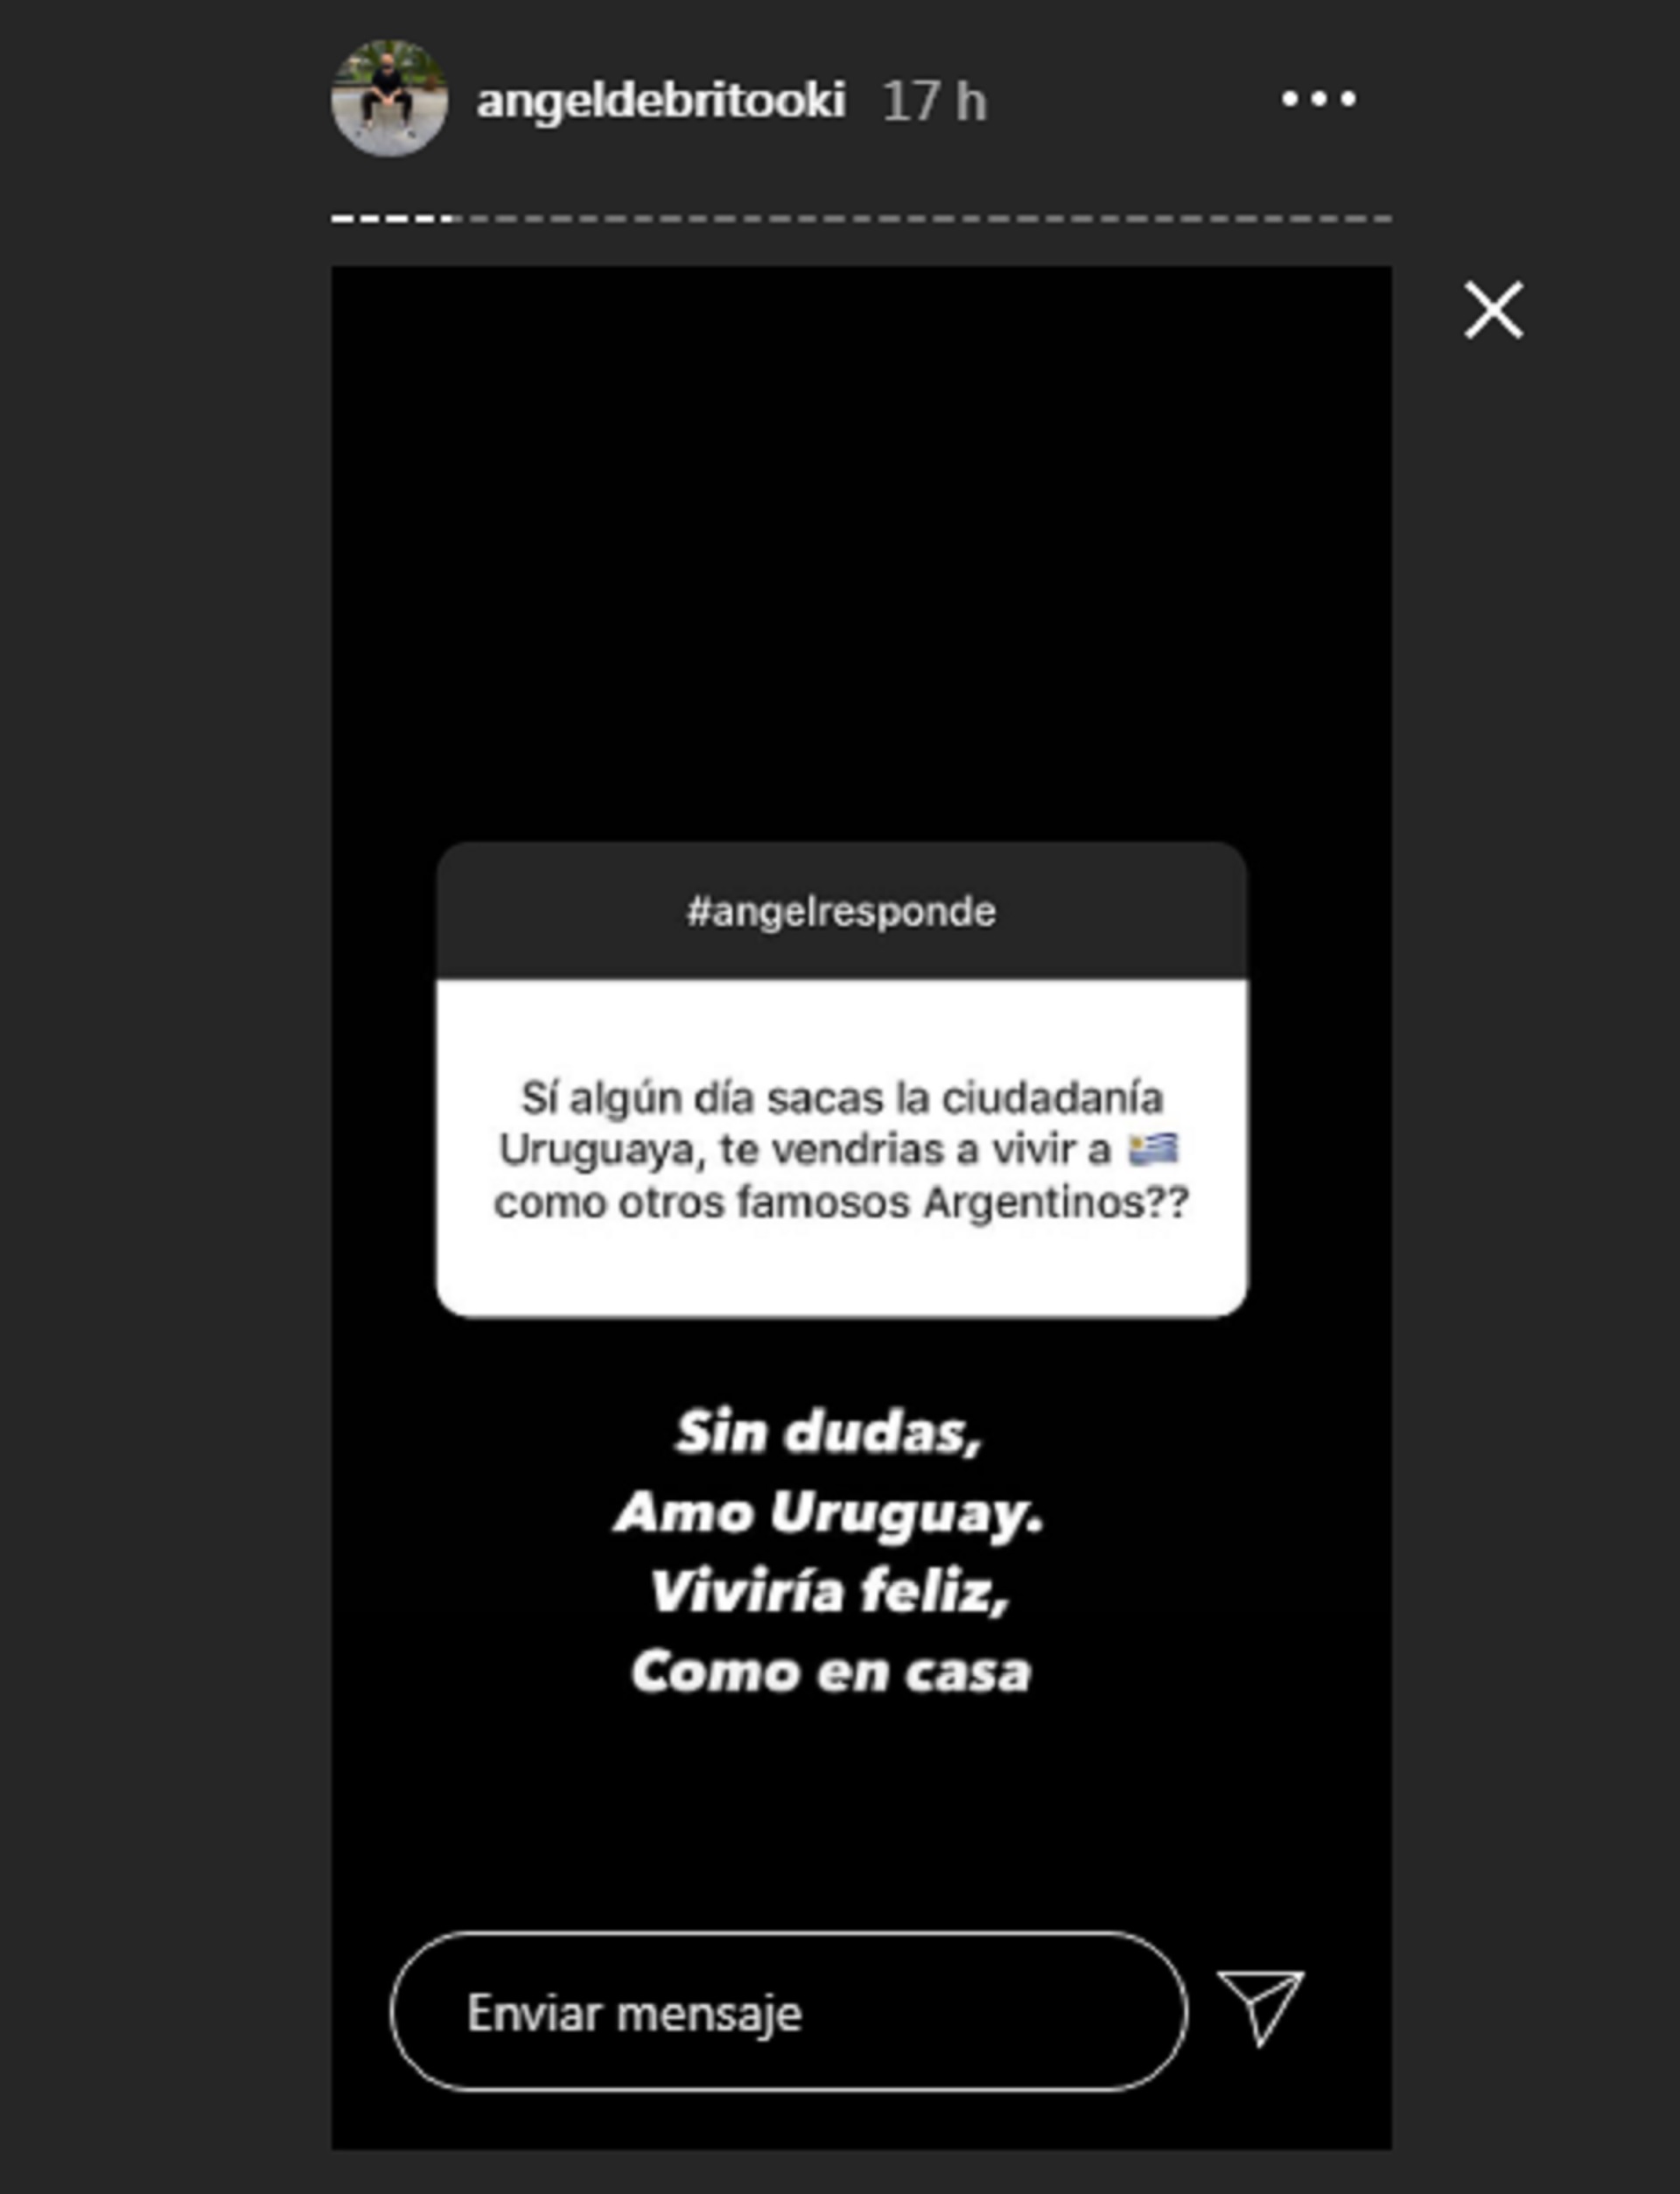 La respuesta de Ángel De Brito en Instagram